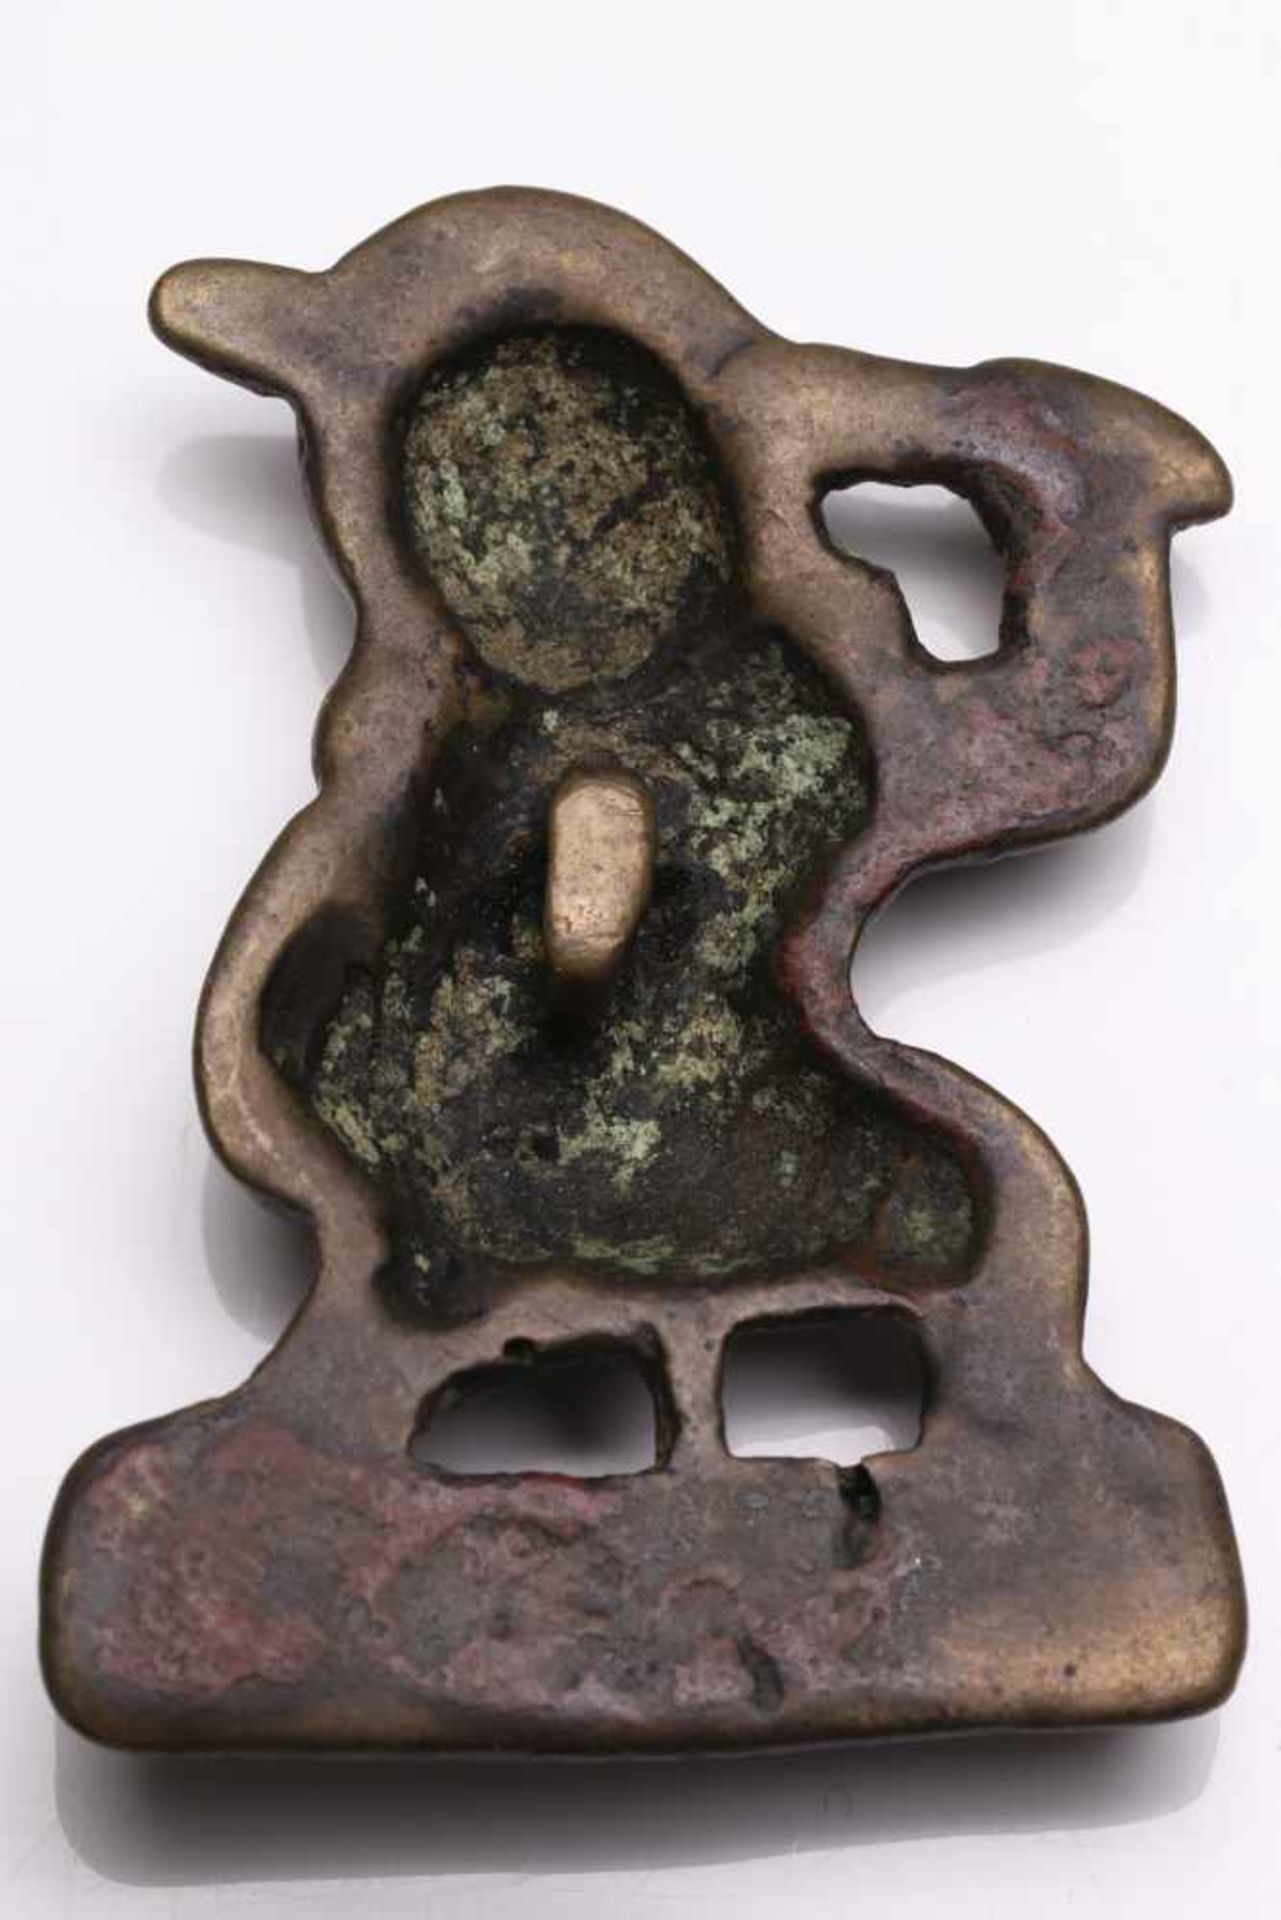 THOCKCHA IN FORM OF ACALABronzeTibet , 12th centuryDimensions: Height 4,5 cmWeight: 20 grams - Bild 2 aus 2